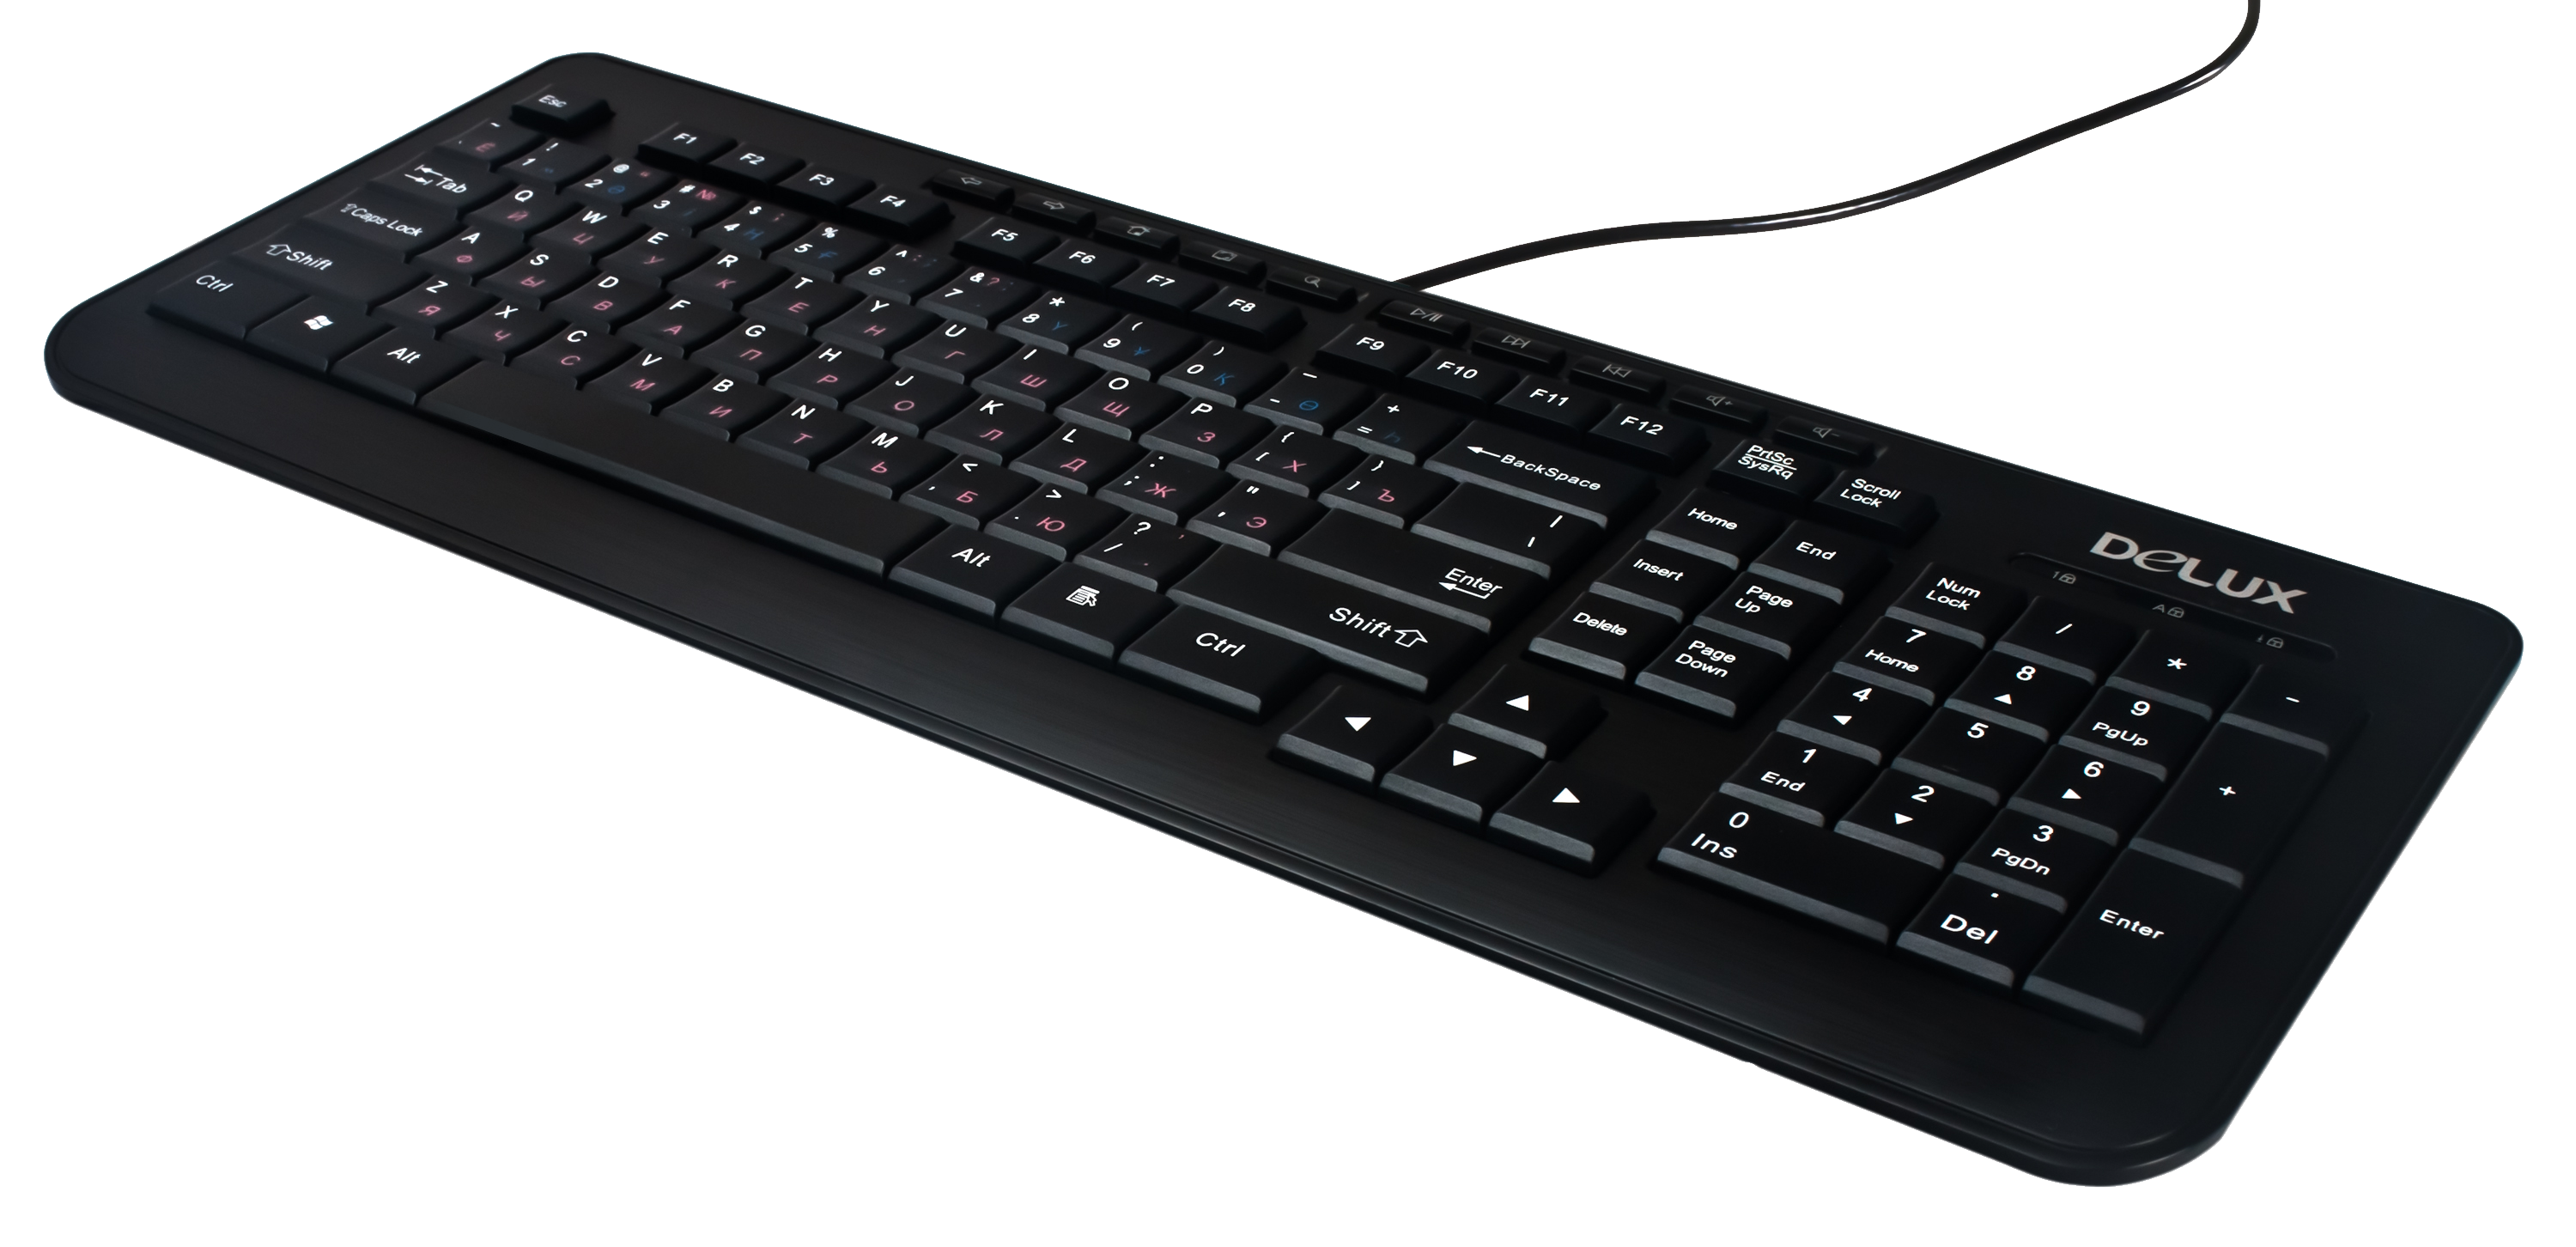 PC Keyboard PNG image